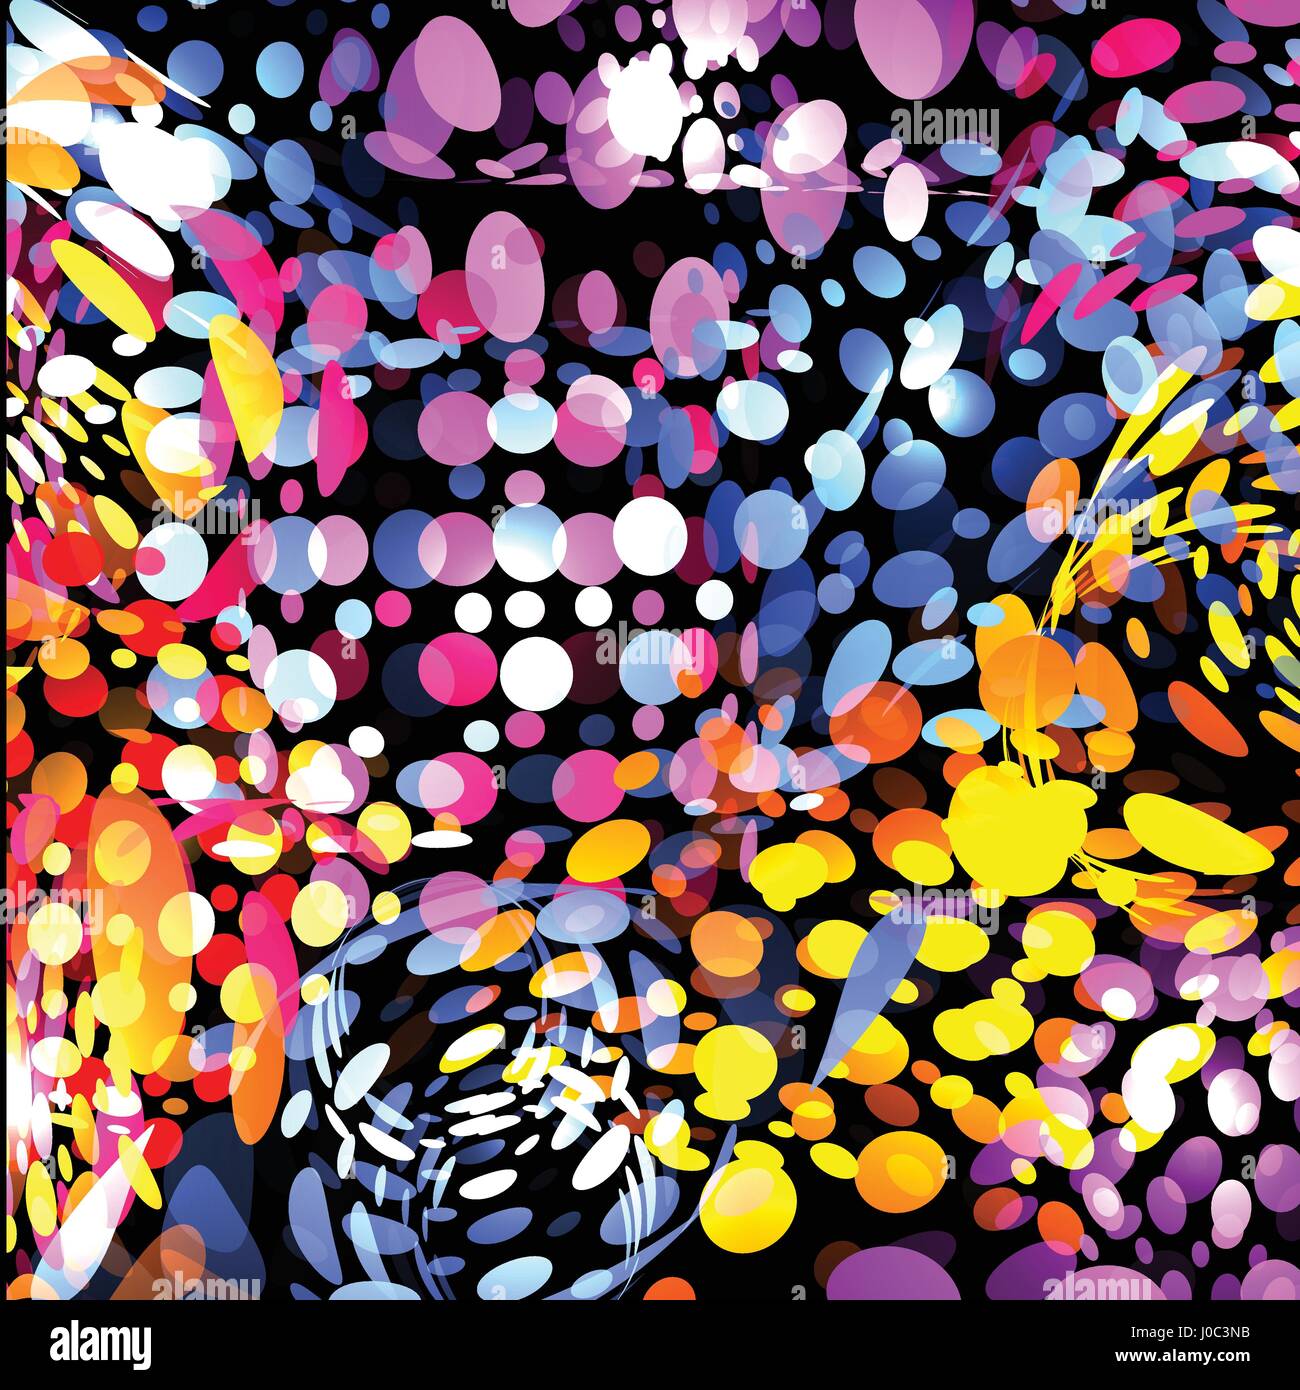 Isolierte abstrakte bunte Bläschen auf schwarzem Hintergrund, Kinder Tropfen gepunktete Textur helle Tapeten-Vektor-illustration Stock Vektor